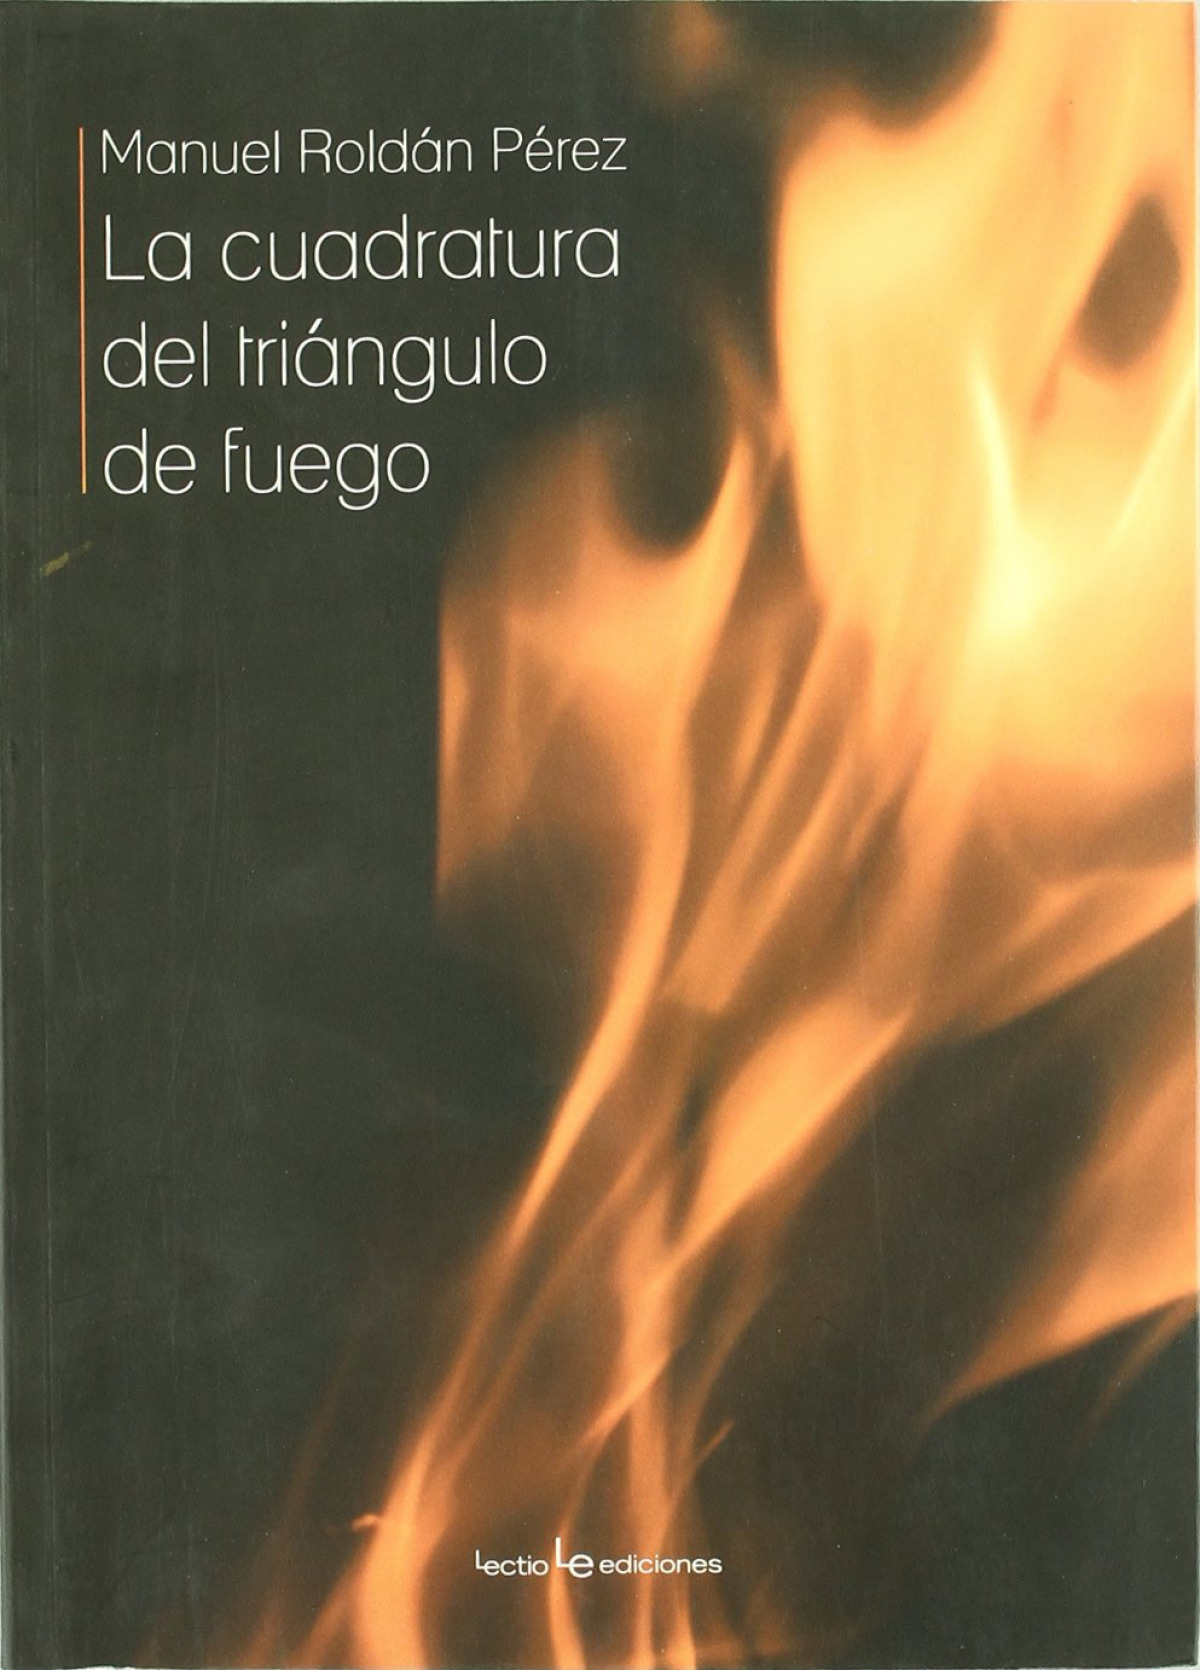 La cuadratura del triángulo de fuego - Manuel Roldán Pérez